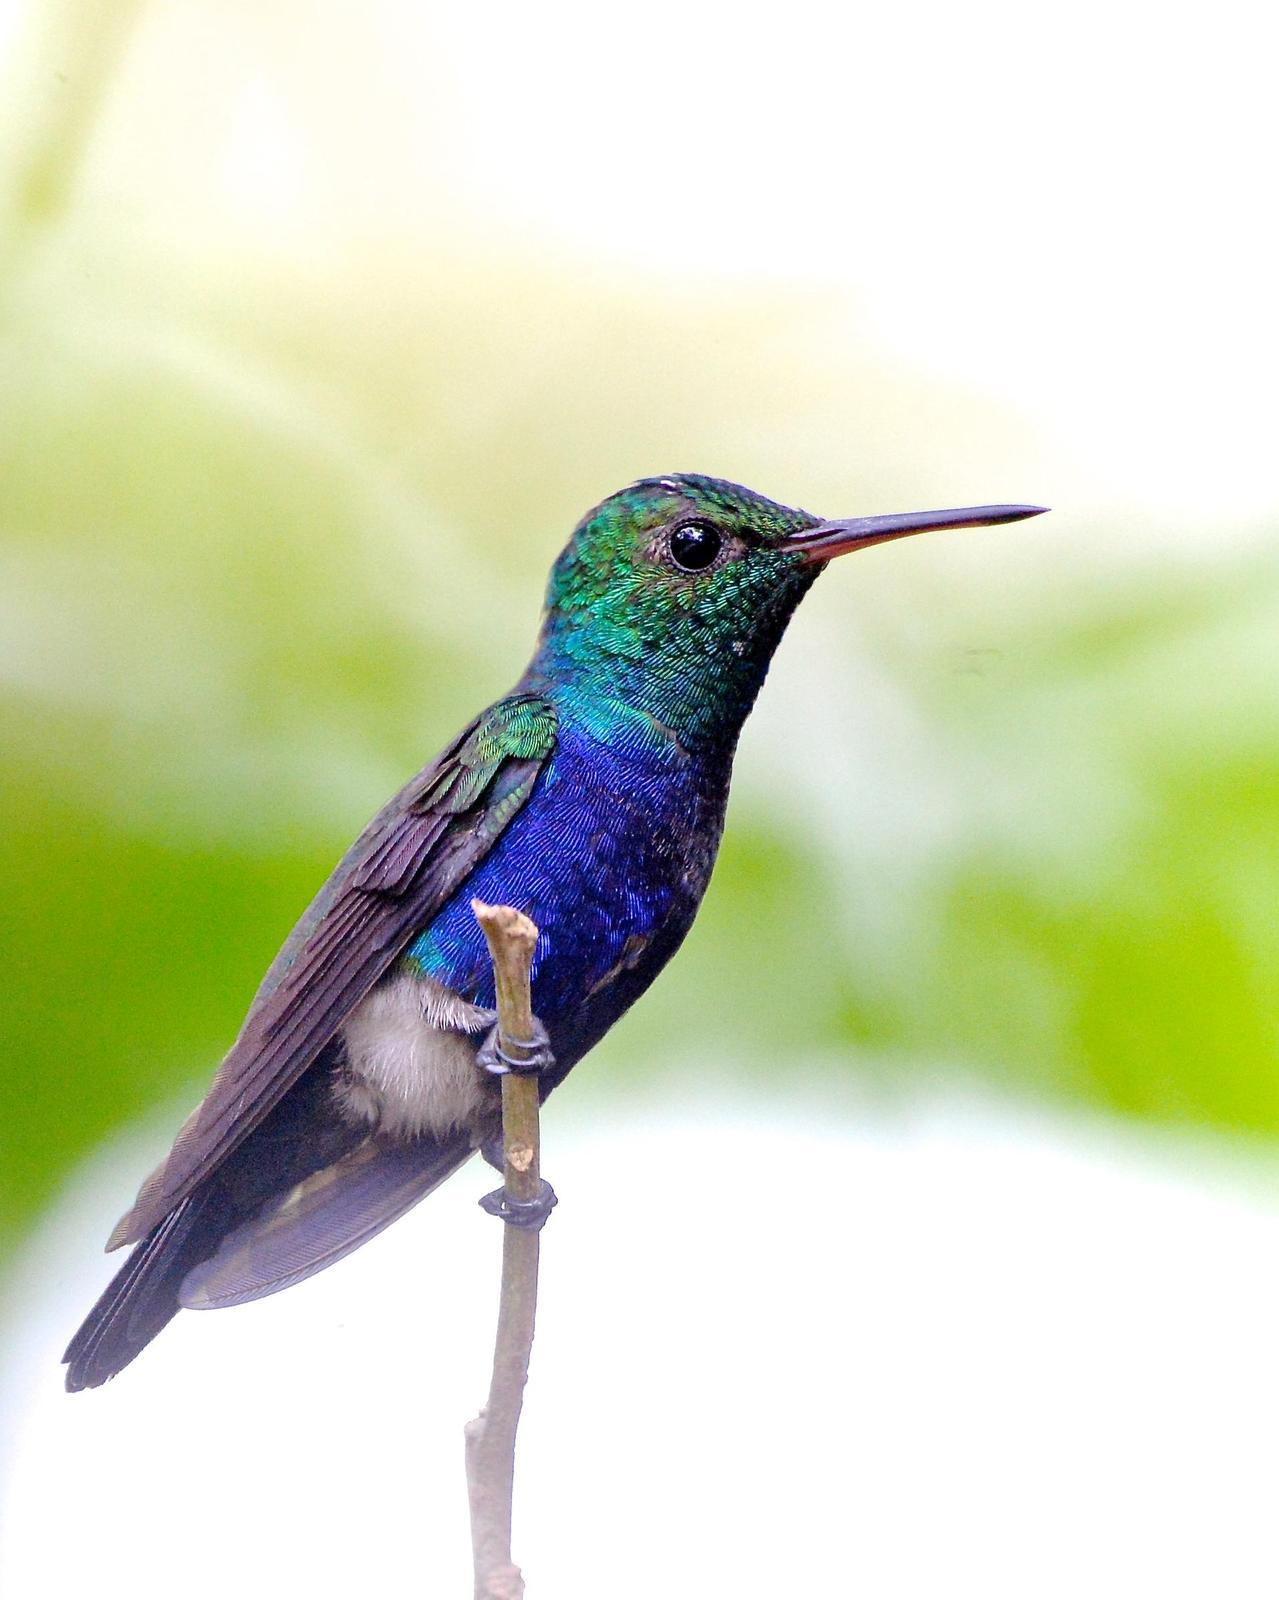 Violet-bellied Hummingbird Photo by Gerald Friesen